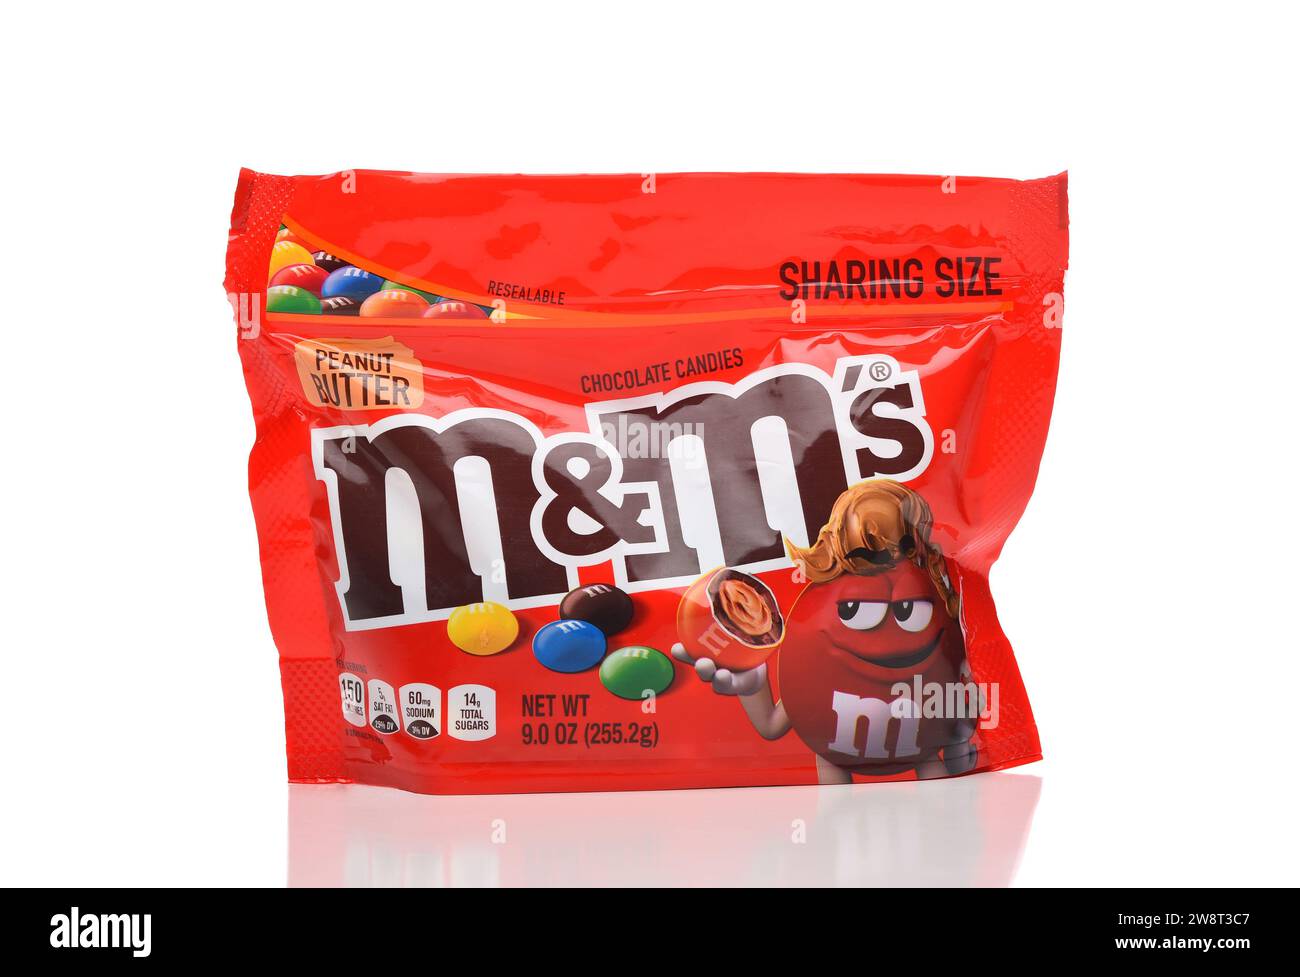 IRVINE, CALIFORNIA - 21 DEC 2023: Un sacchetto di M e MS burro di arachidi caramelle di cioccolato, Sharing size. Foto Stock